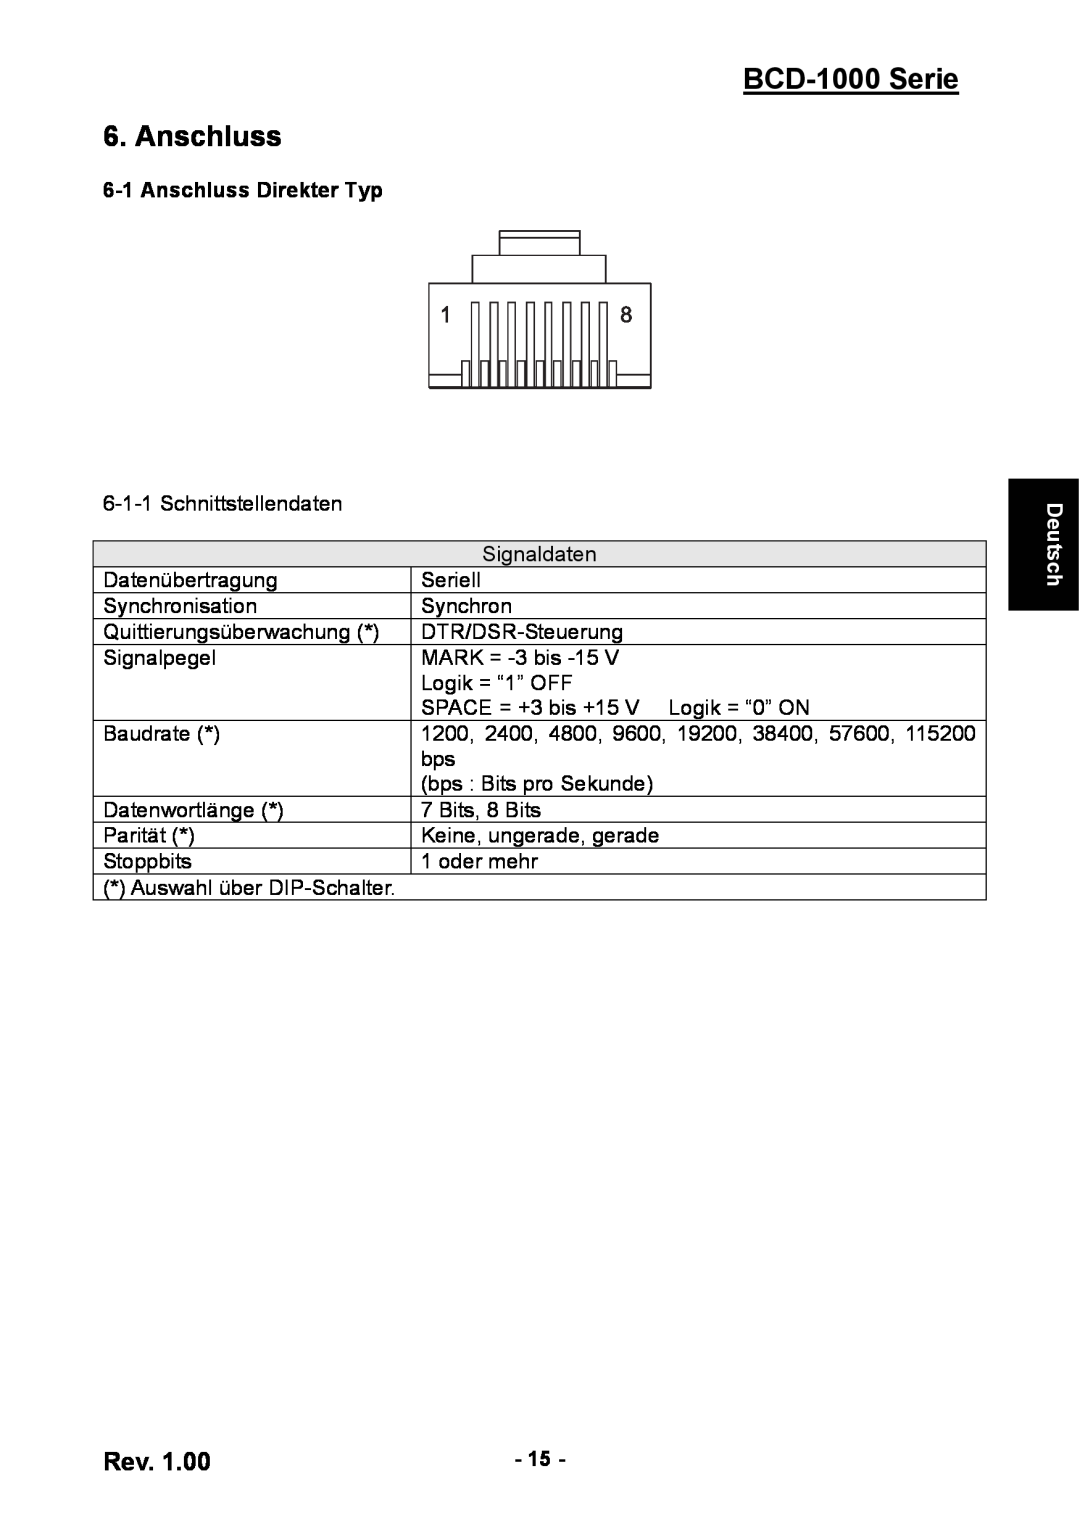 Samsung user manual BCD-1000 Serie 6. Anschluss, Anschluss Direkter Typ, Deutsch 